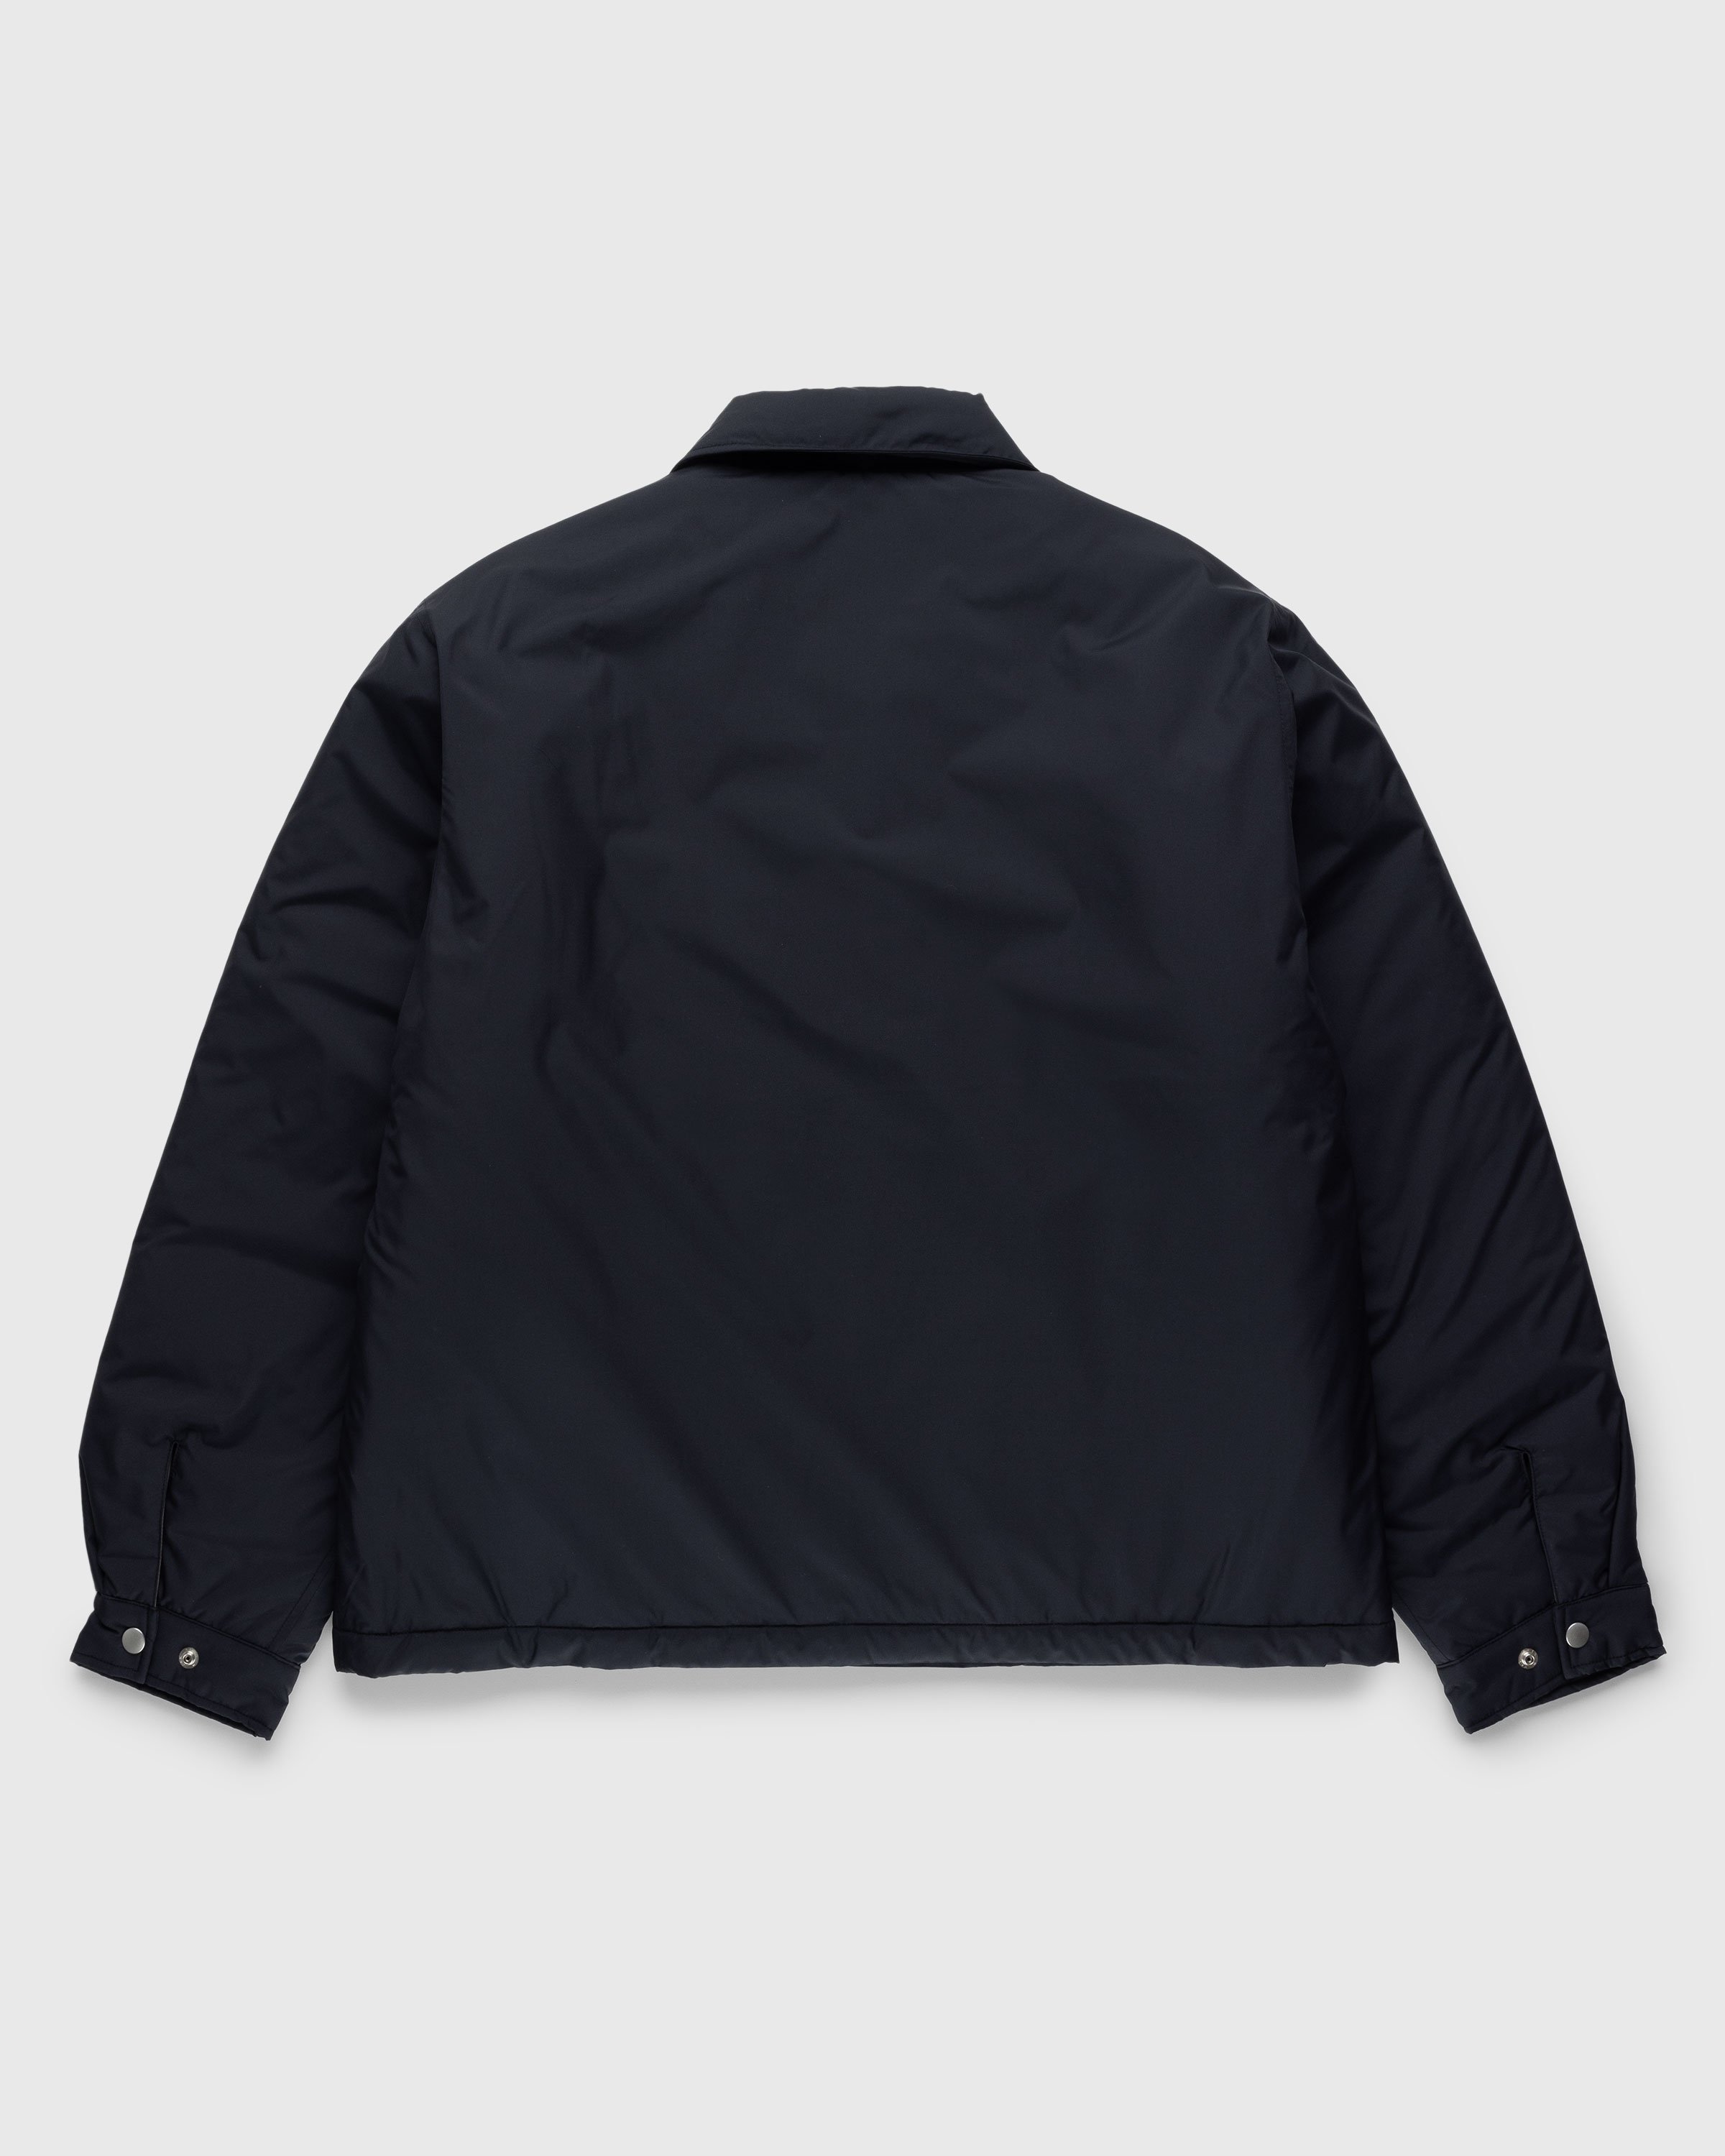 Highsnobiety HS05 - Light Insulated Eco-Poly Jacket Black - Clothing - Black - Image 2